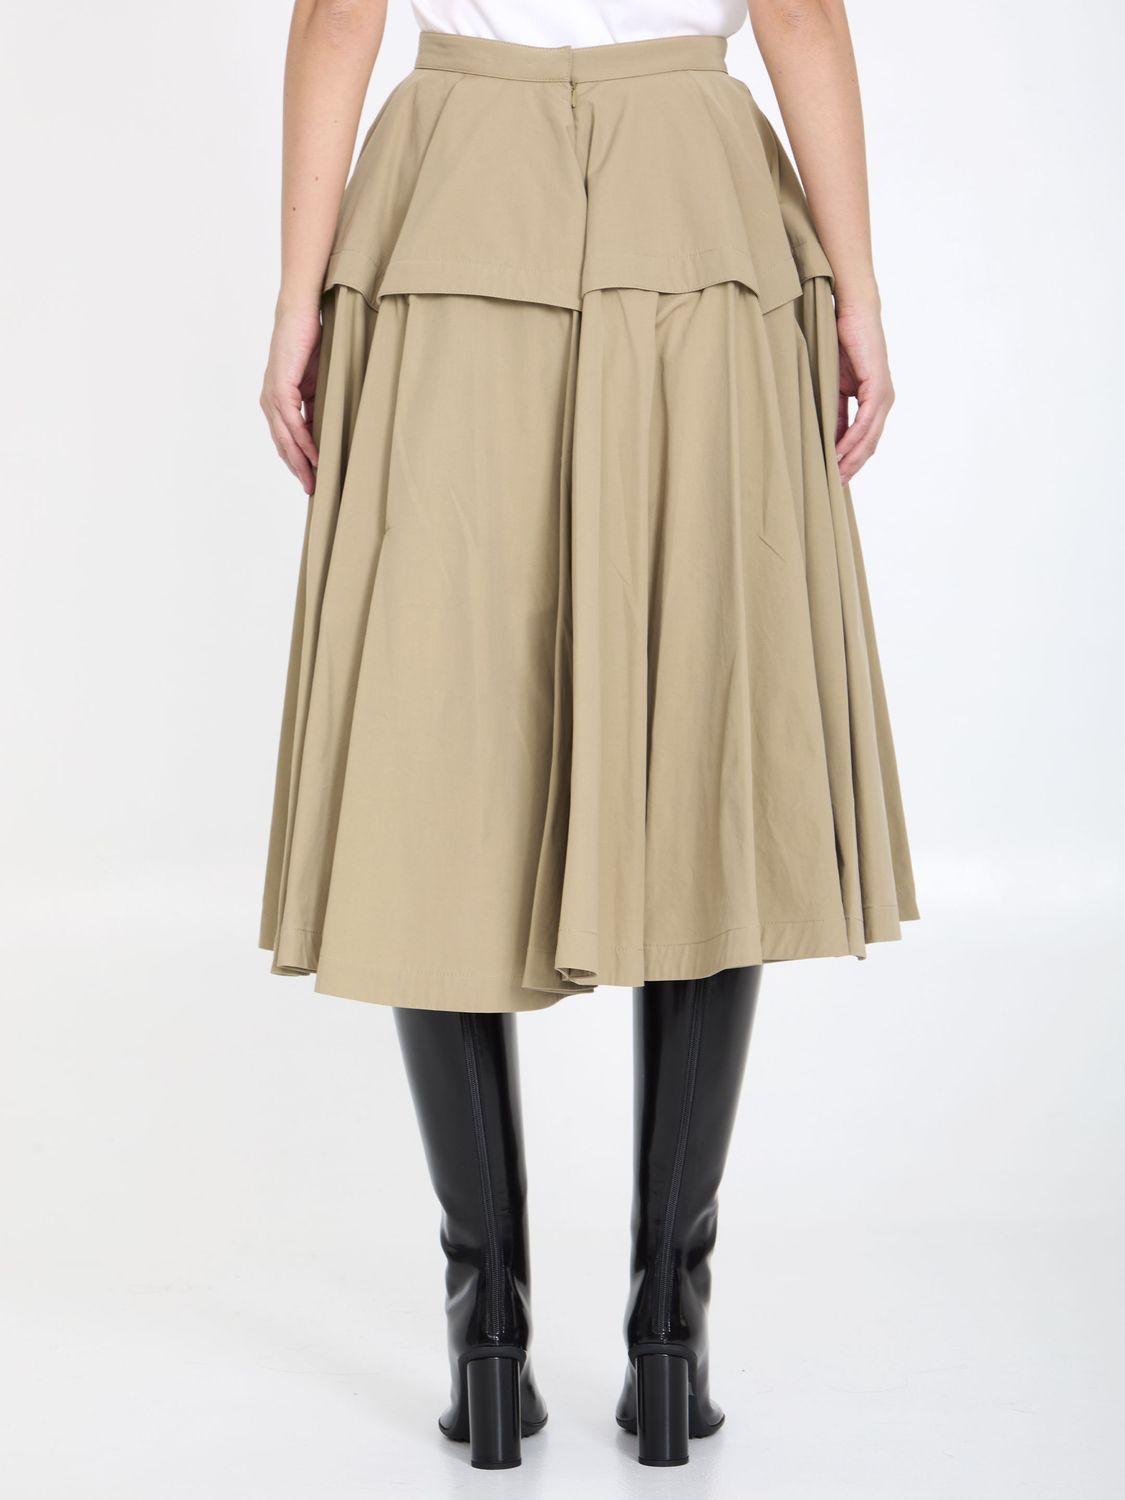 Chân váy A-Line màu cát từ chất liệu bông kỹ thuật compact cho phái đẹp